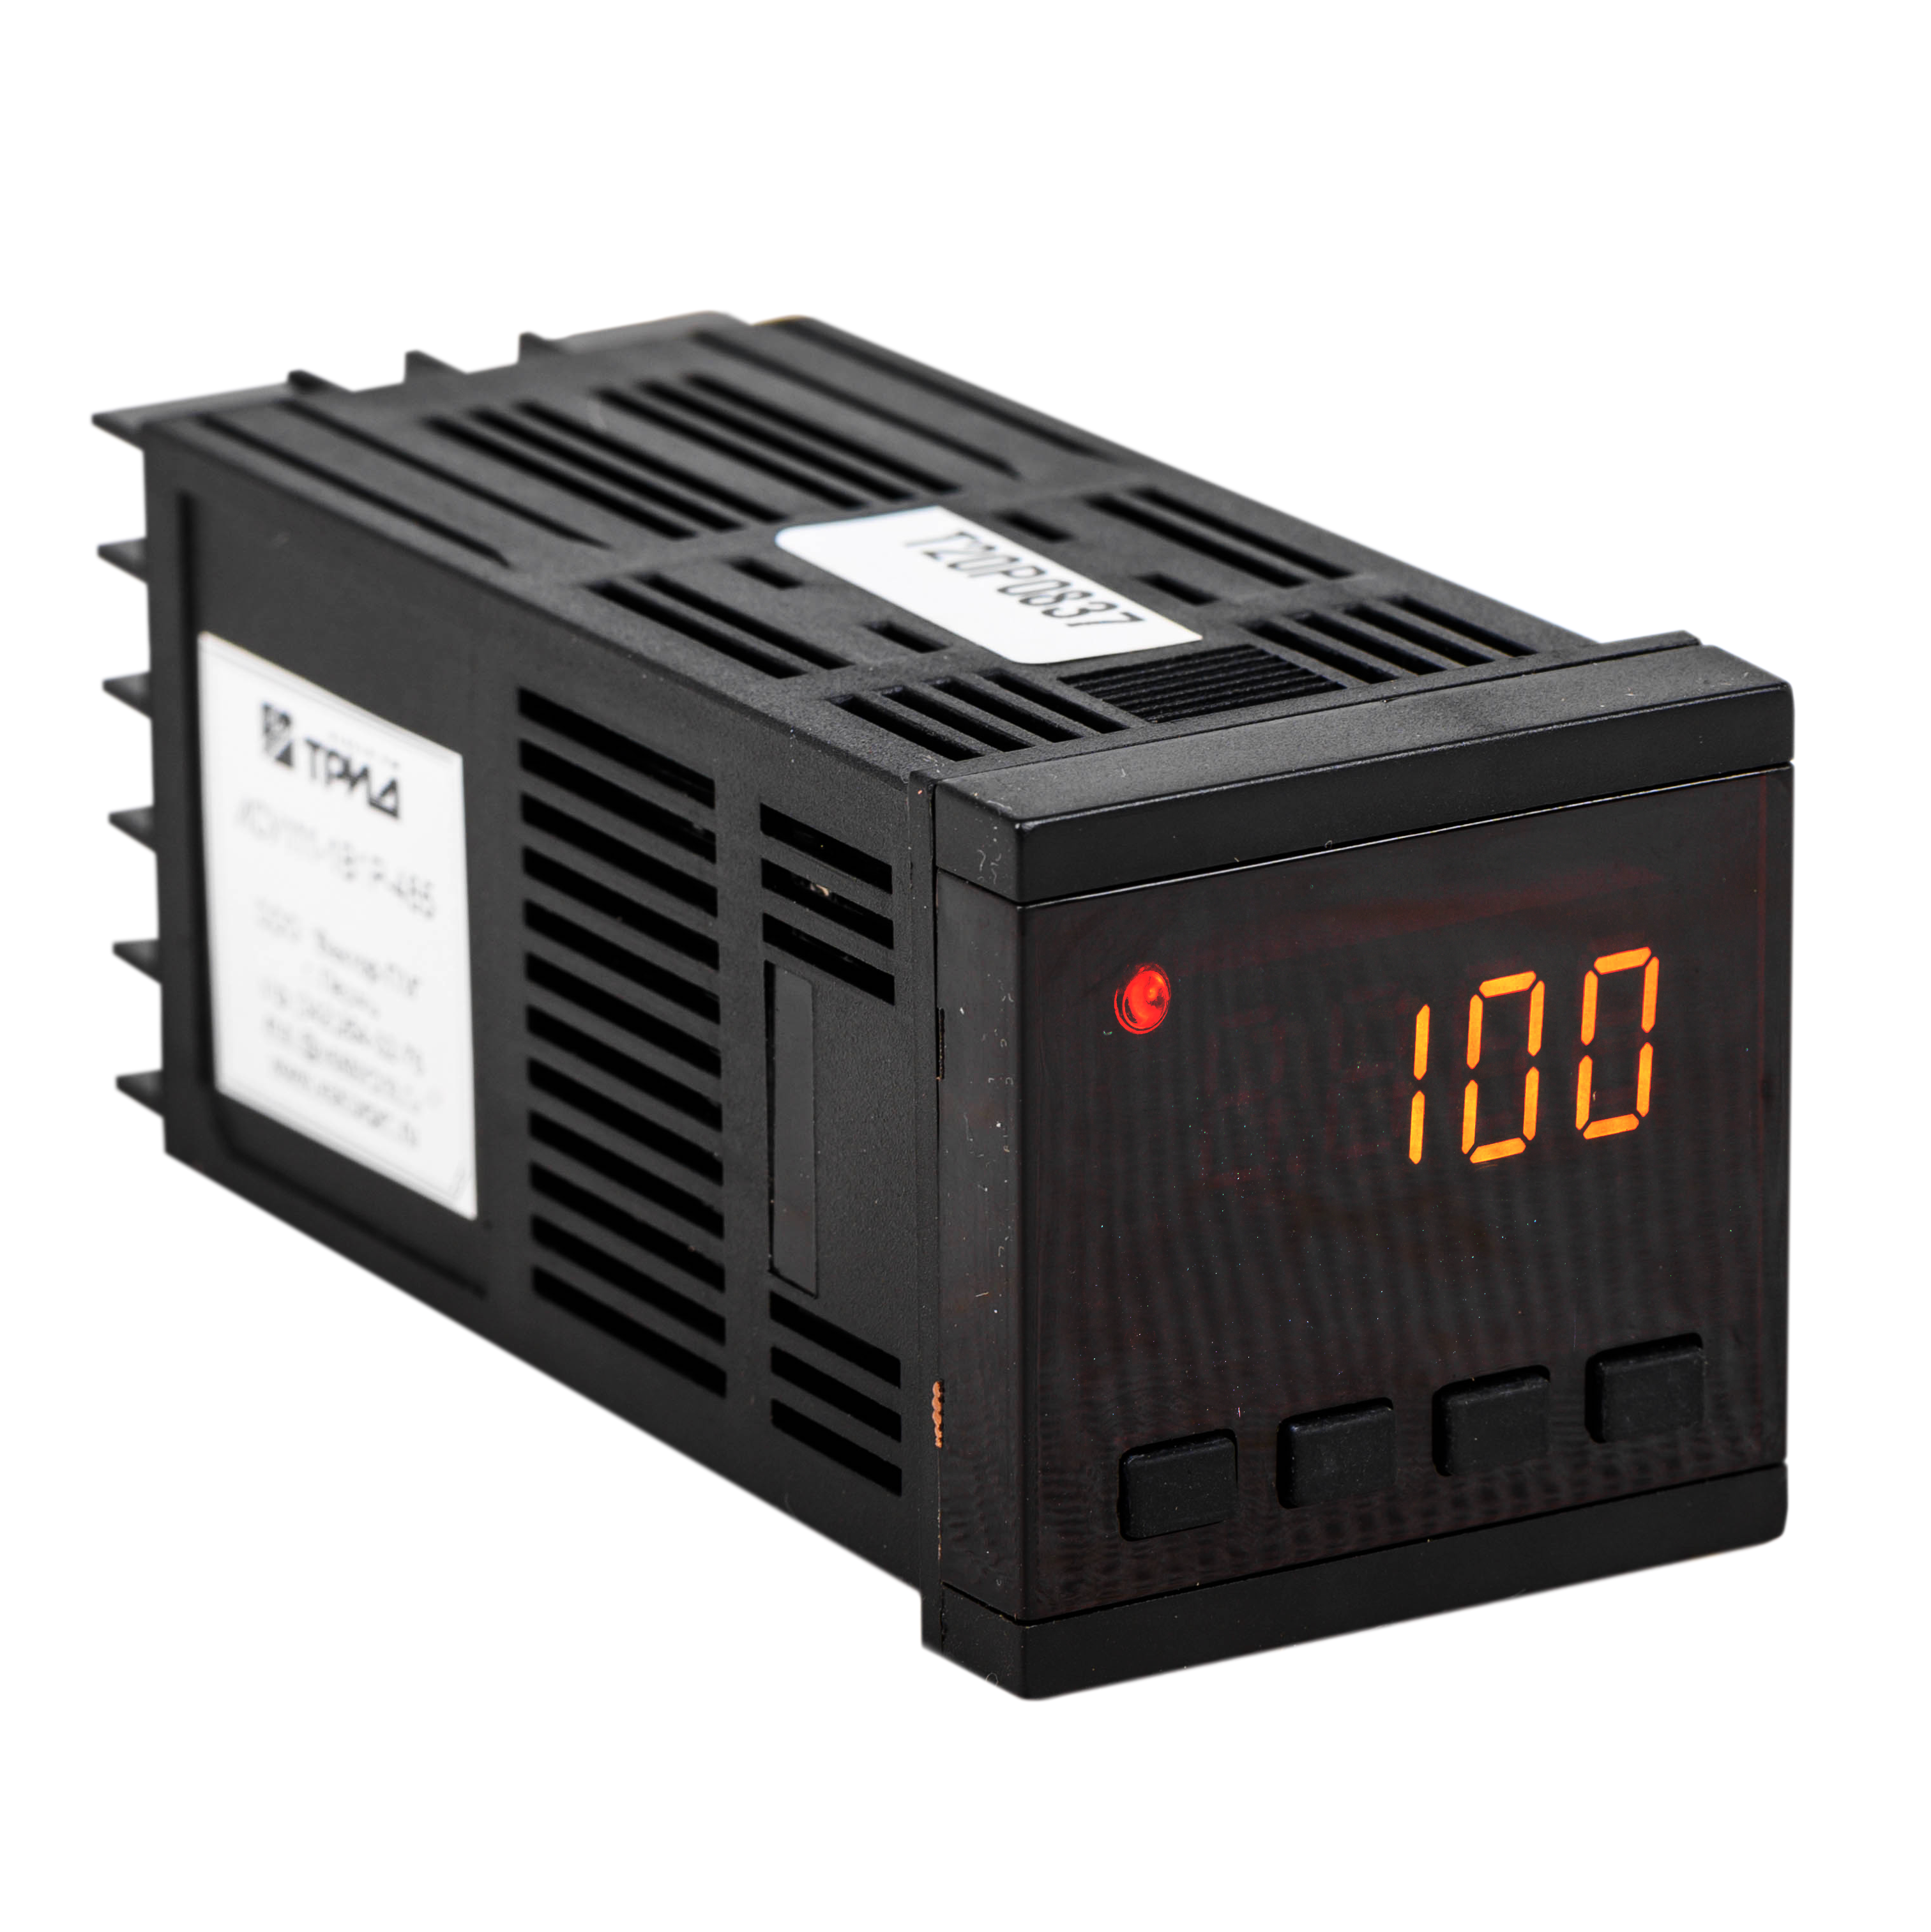 ИСУ111-1В1Р-485 Измеритель-сигнализатор температурный